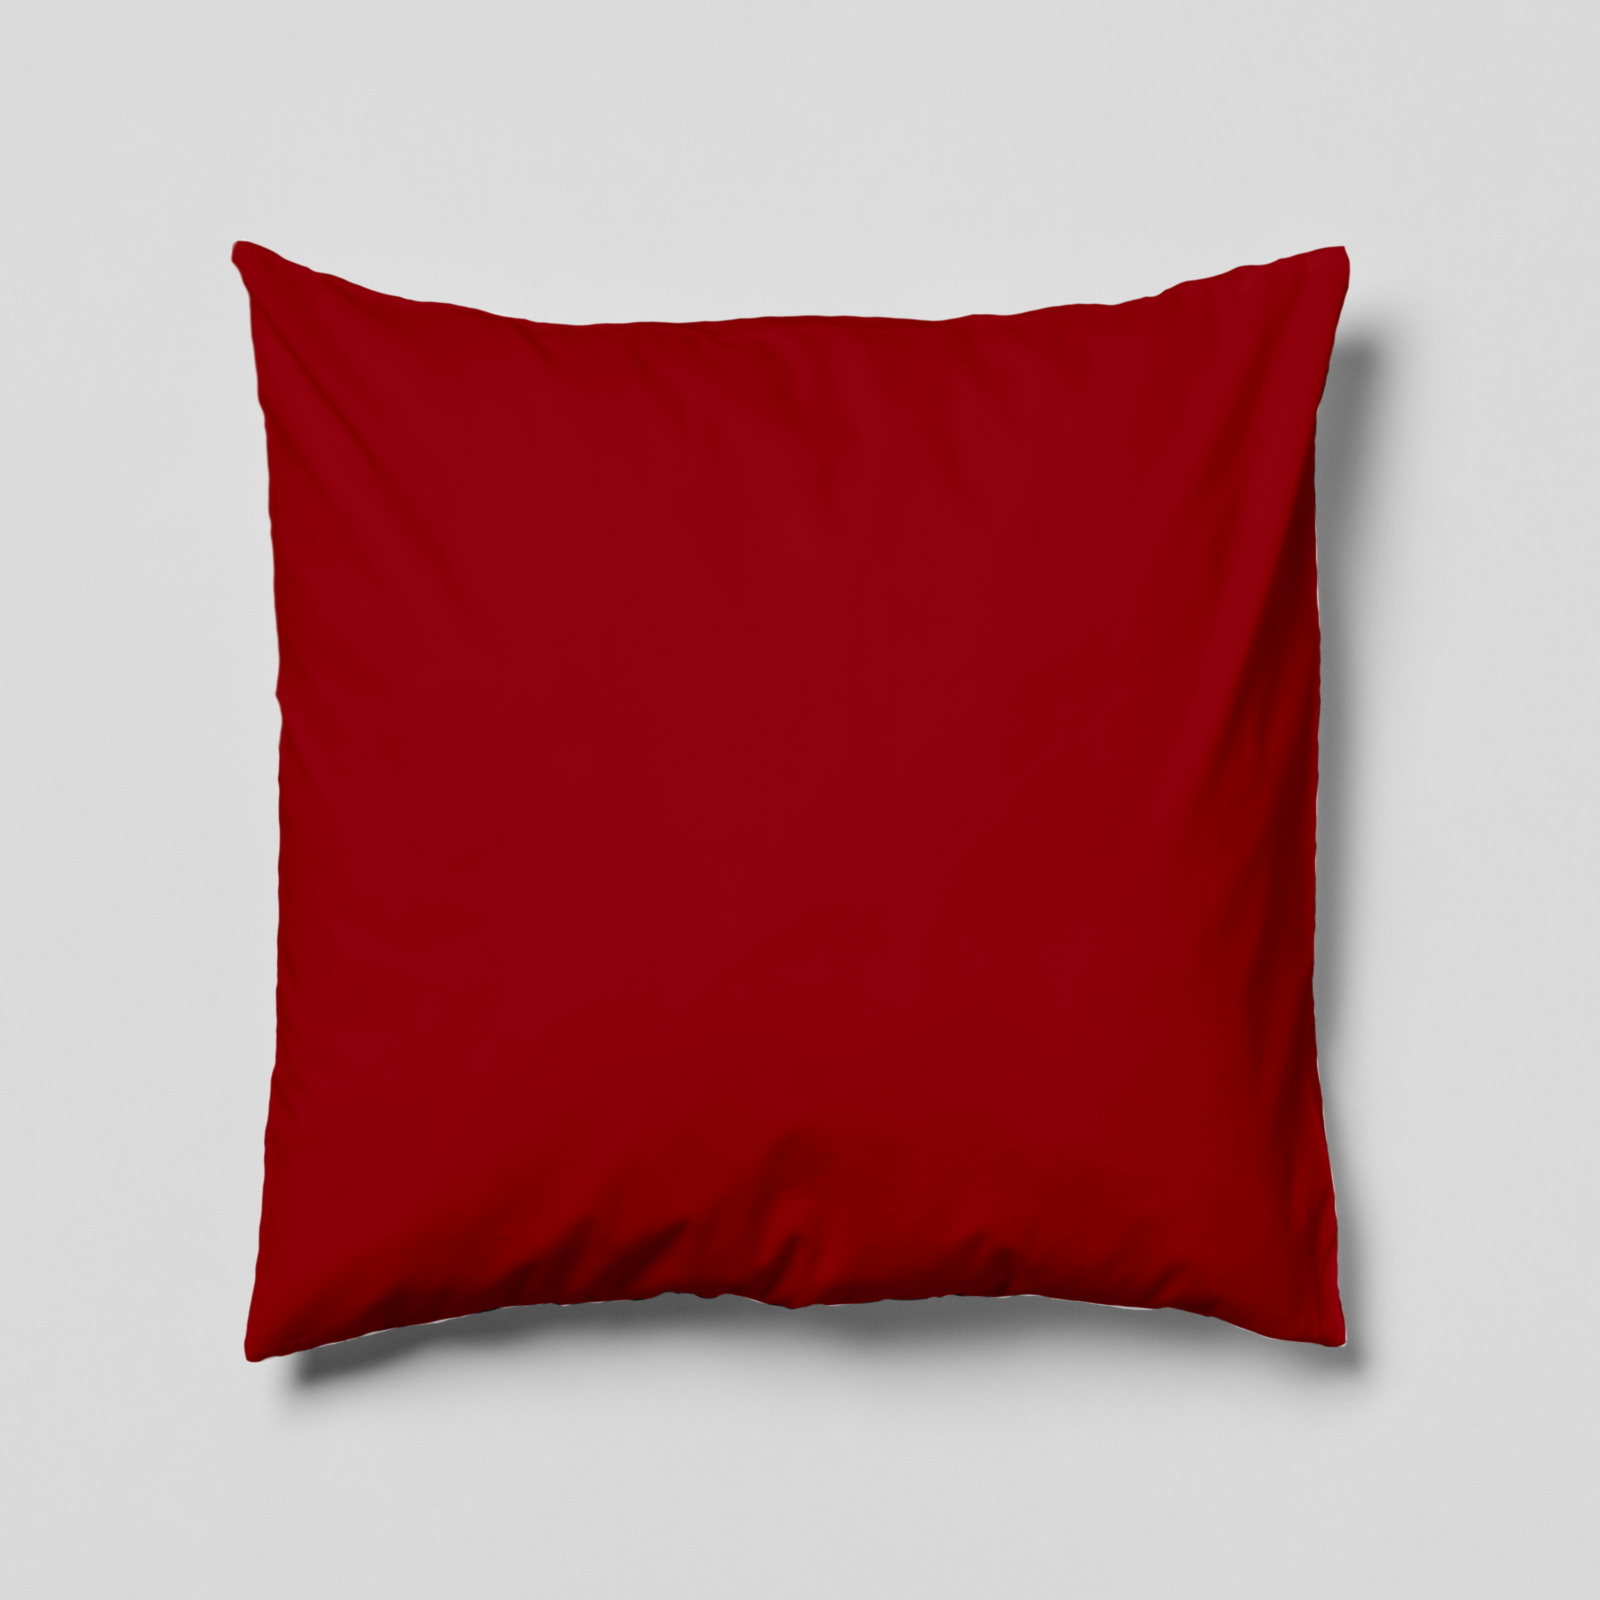 Komplettkissen Polyester-Bordeaux Rot / 50x50 cm